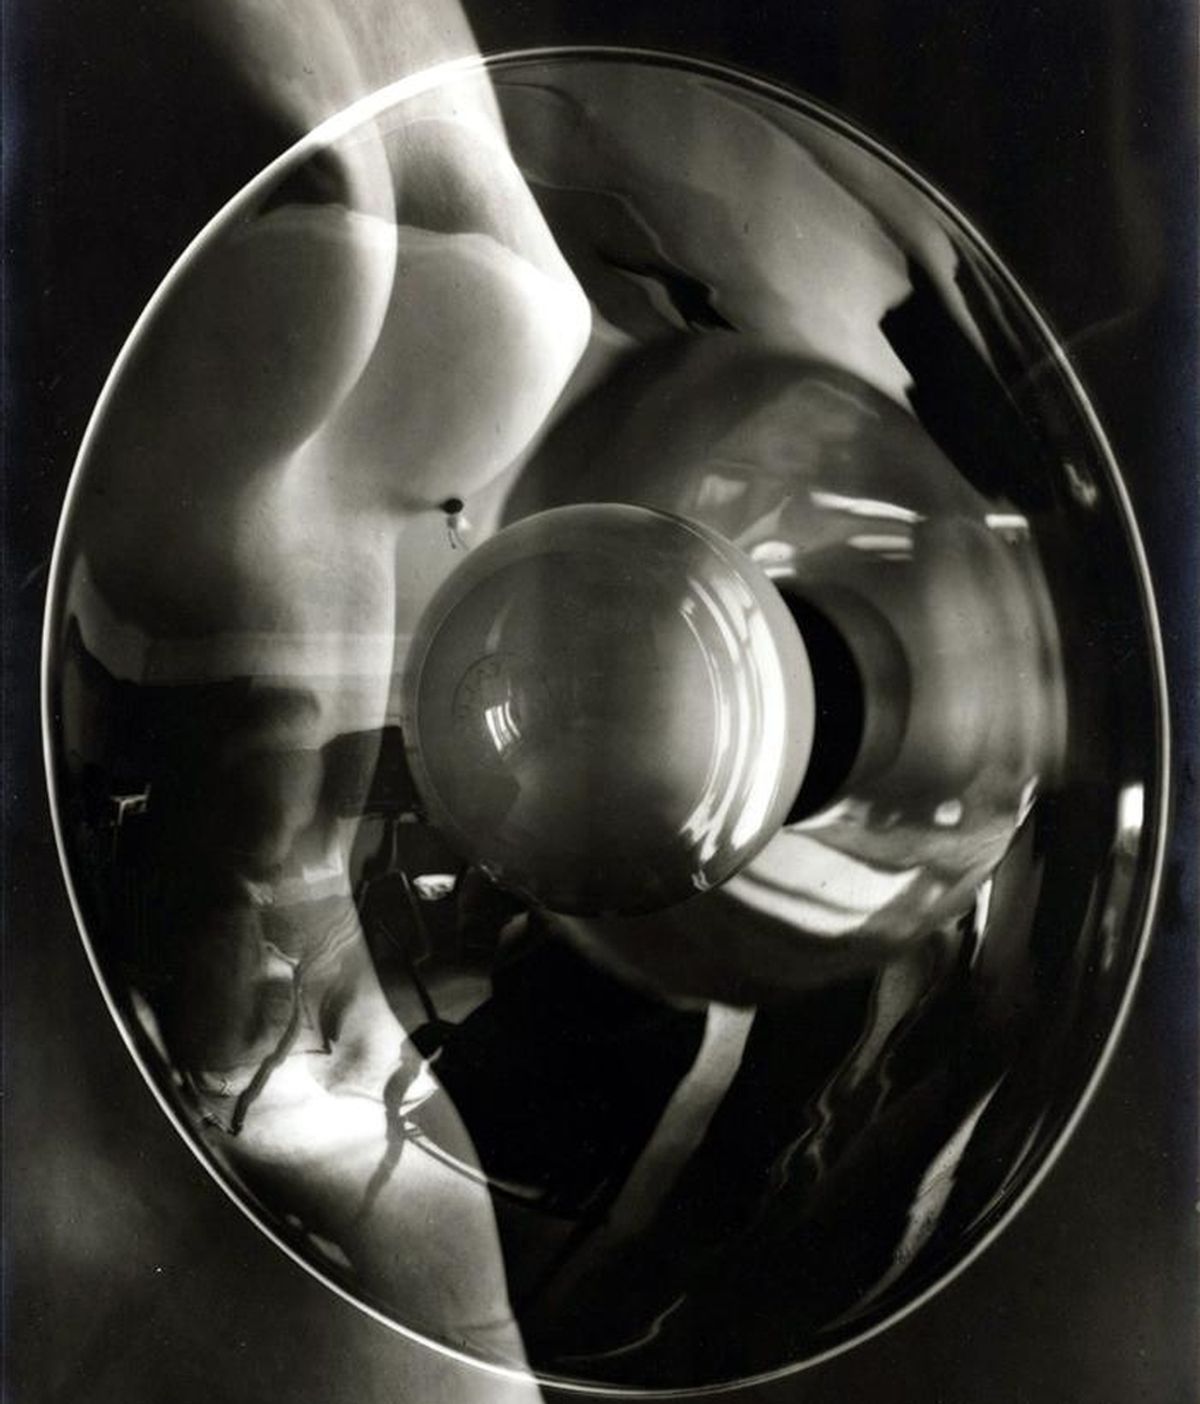 Reproducción de la imagen "Photomontage with Nude and Studio Light", del artista surrealista Man Ray (1890-1976), que se adjudicó el 6 de abril 2011, por 410.500 dólares en una subasta en Nueva York (EE.UU.), con lo que se convirtió en la obra más cara de la puja de fotografías organizada por la firma Sotheby's. EFE/Man Ray/Sotheby's